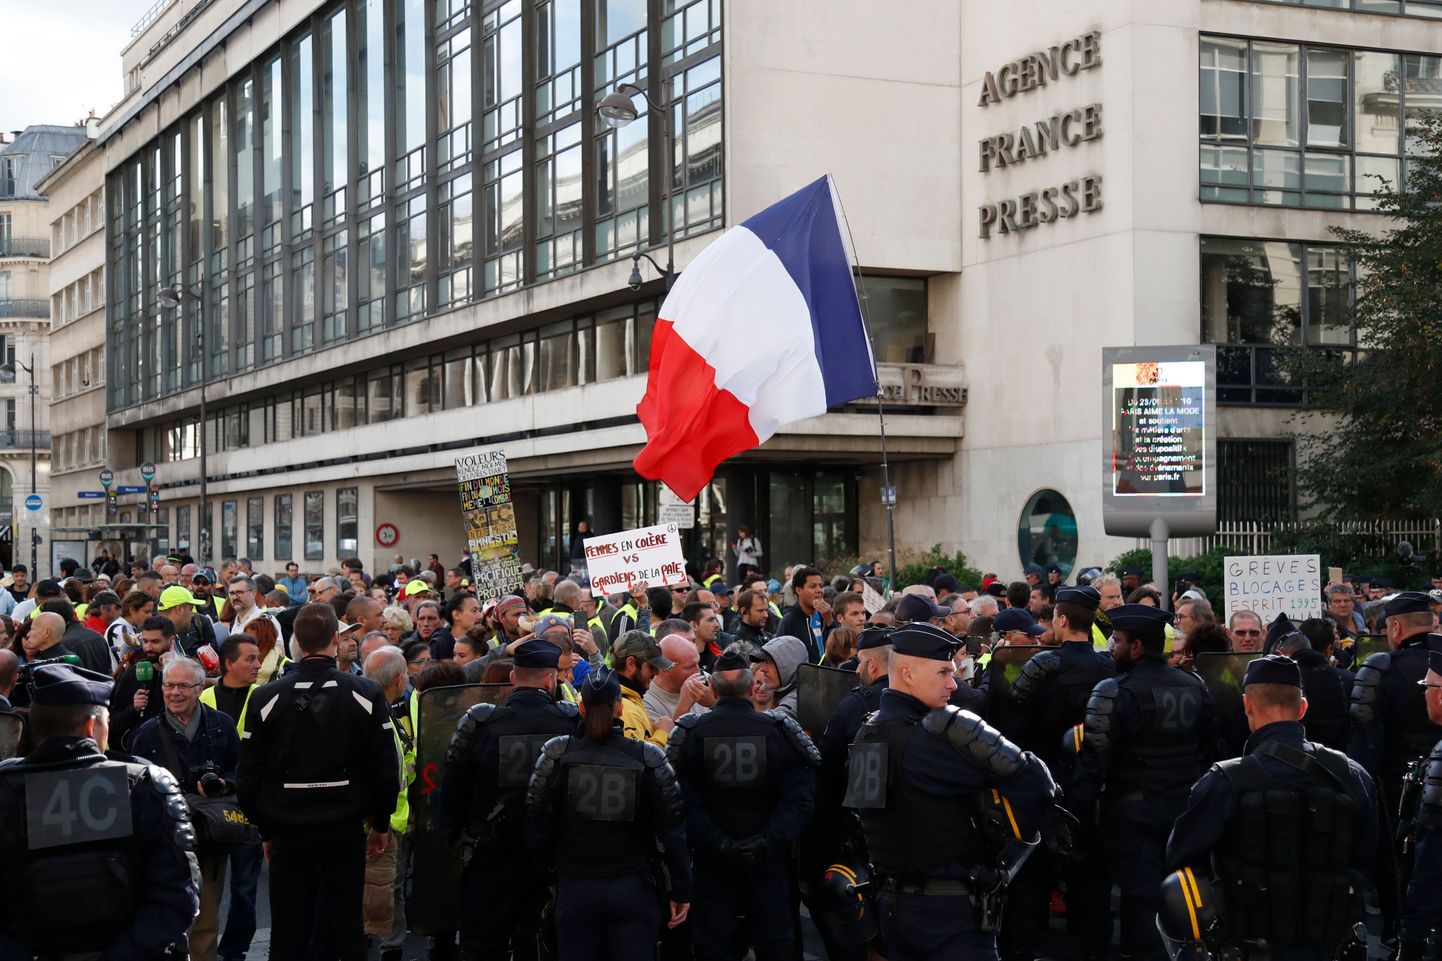 Prantsuse politsei lasi laupäeval riigi lõunaosas Toulouse´i linnas kollavestide meeleavalduse laialiajamiseks korduvalt käiku pisargaasi ja veekahurid.